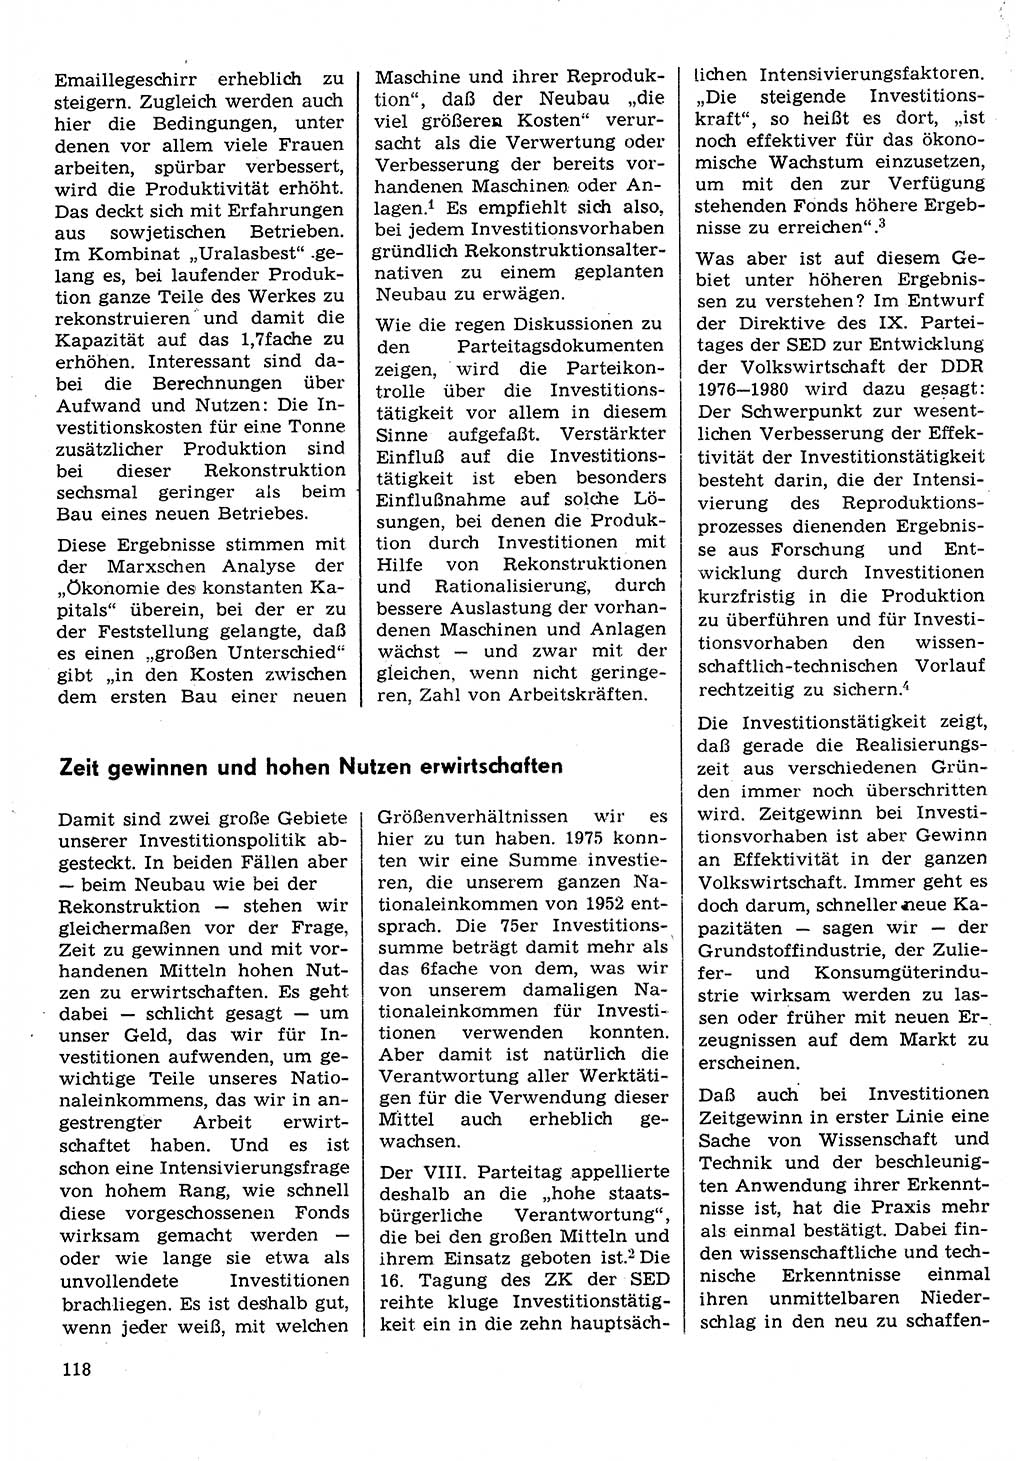 Neuer Weg (NW), Organ des Zentralkomitees (ZK) der SED (Sozialistische Einheitspartei Deutschlands) für Fragen des Parteilebens, 31. Jahrgang [Deutsche Demokratische Republik (DDR)] 1976, Seite 118 (NW ZK SED DDR 1976, S. 118)